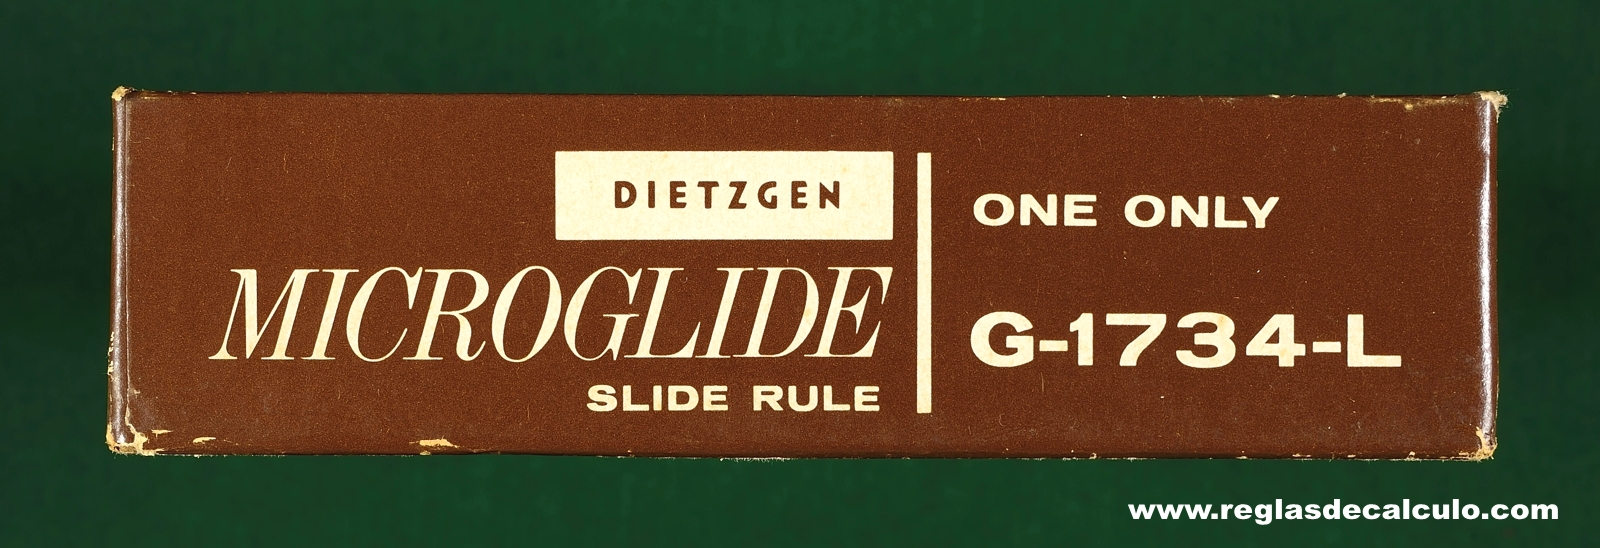 Regla de Calculo Slide rule Dietzgen G-1734-L